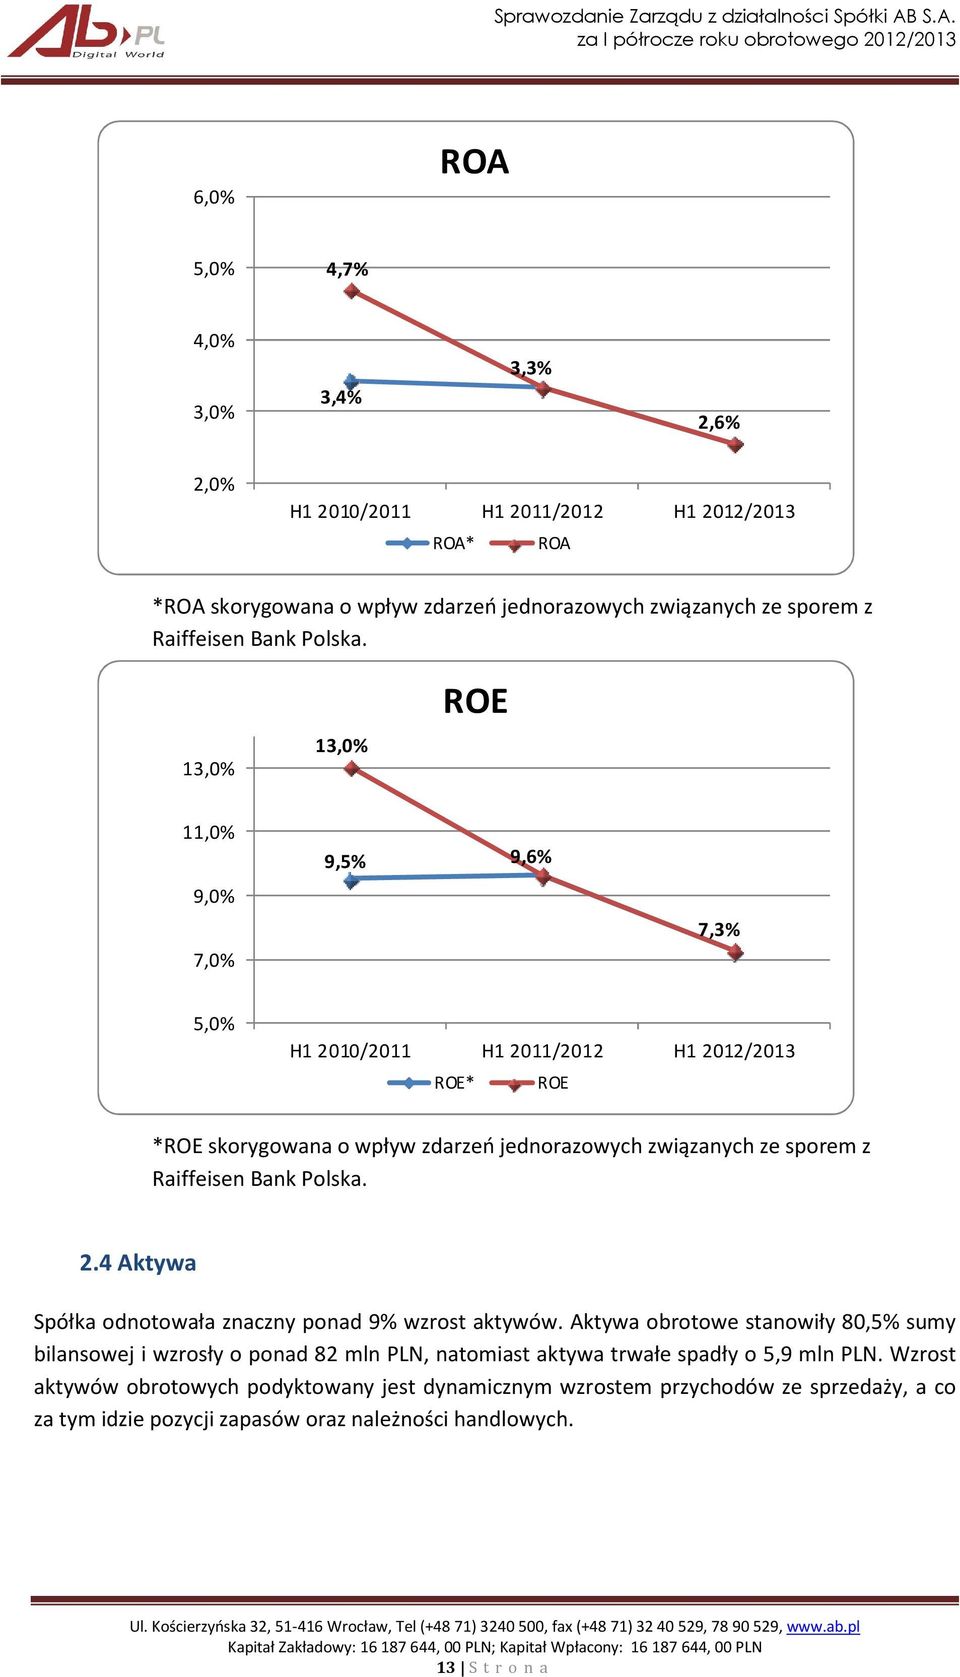 13,0% 13,0% ROE 11,0% 9,0% 7,0% 9,5% 9,6% 7,3% 5,0% H1 2010/2011 H1 2011/2012 H1 2012/2013 ROE* ROE *ROE skorygowana o wpływ zdarzeń jednorazowych związanych ze sporem z Raiffeisen